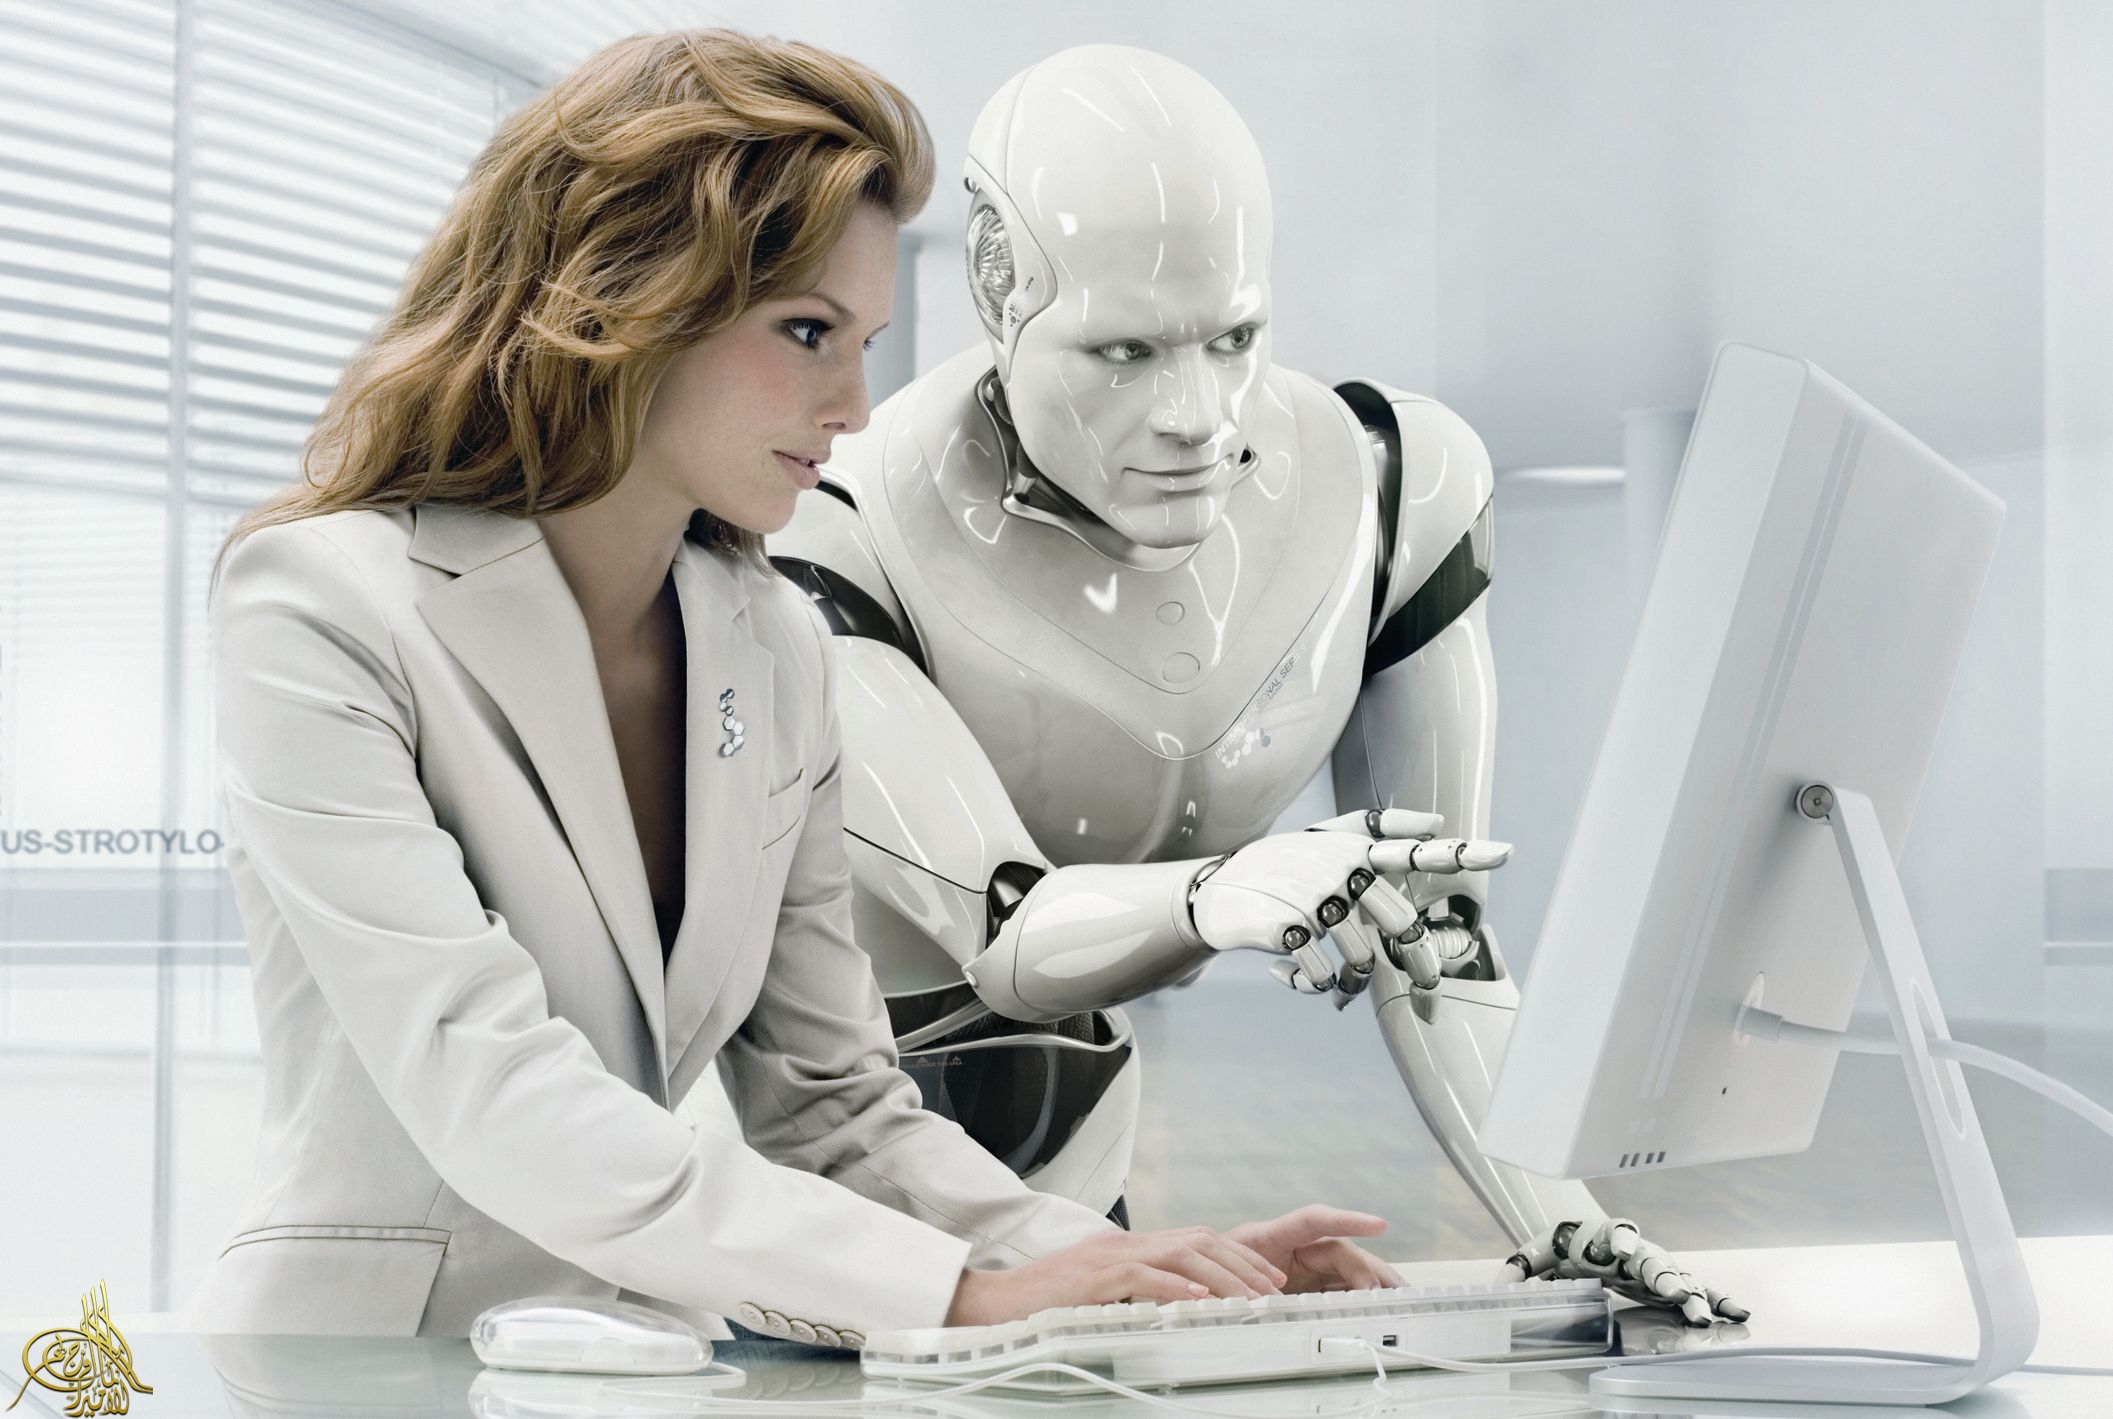 تشغيل البشر جنبا إلى جنب مع الروبوتات... بين المزايا والعيوب